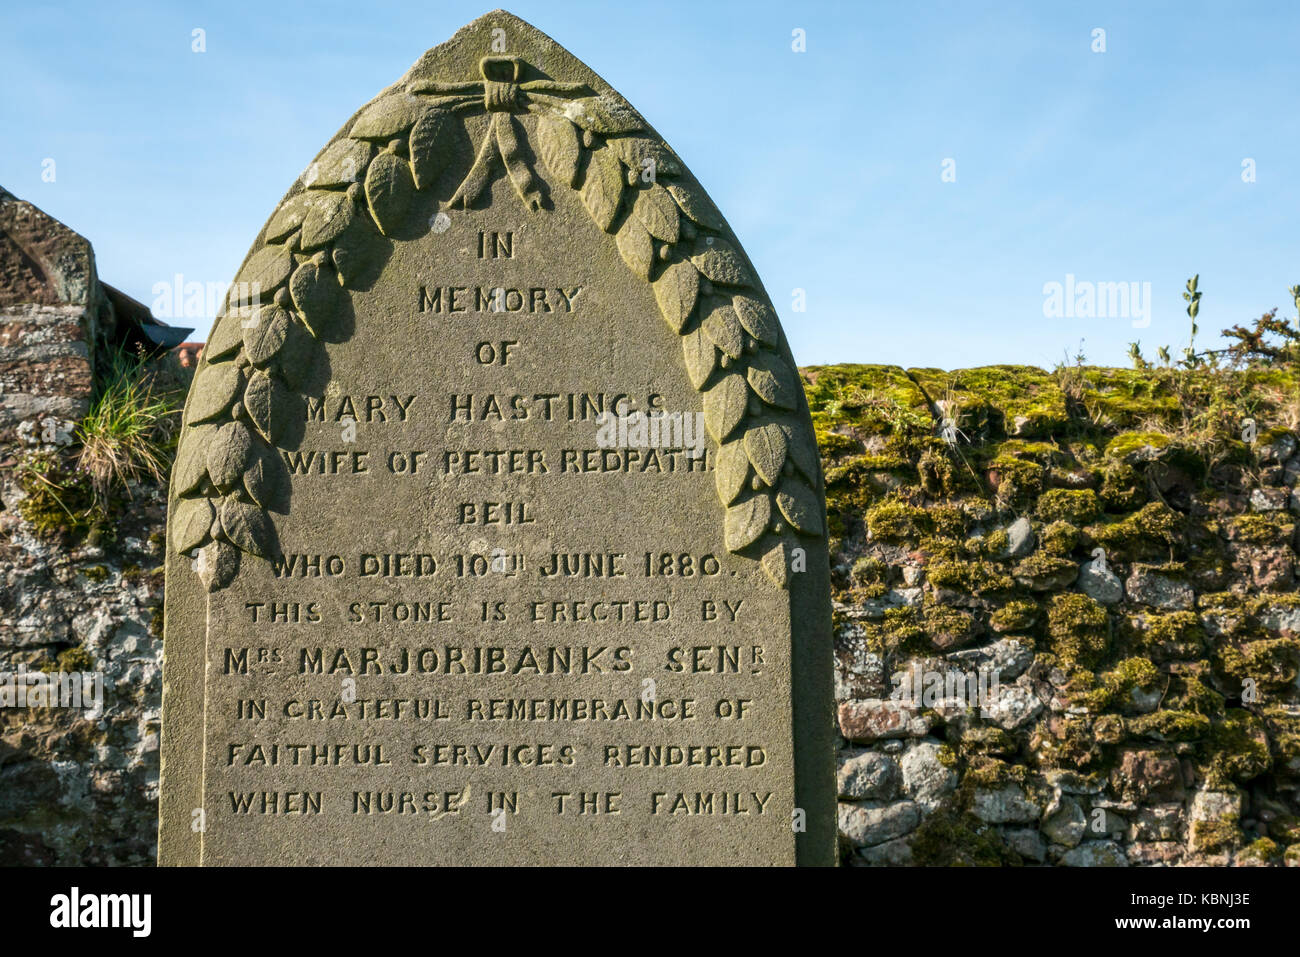 Gros plan de pierre tombale en mémoire d'une infirmière de famille fidèle dans le cimetière du village de Stenton, East Lothian, Écosse, Royaume-Uni Banque D'Images